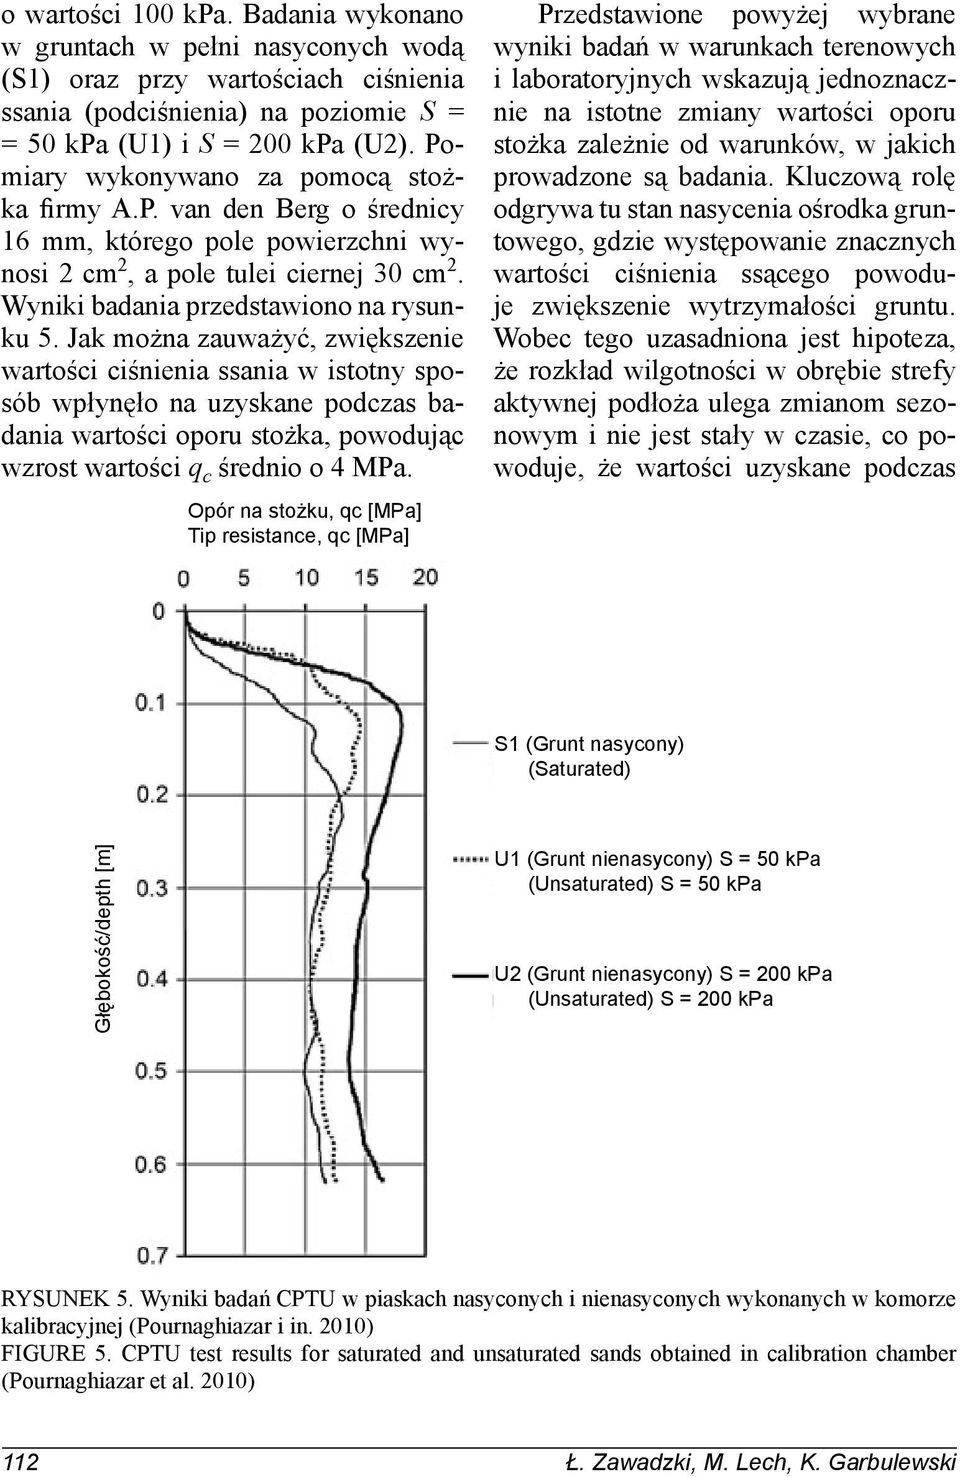 Jak można zauważyć, zwiększenie wartości ciśnienia ssania w istotny sposób wpłynęło na uzyskane podczas badania wartości oporu stożka, powodując wzrost wartości q c średnio o 4 MPa.